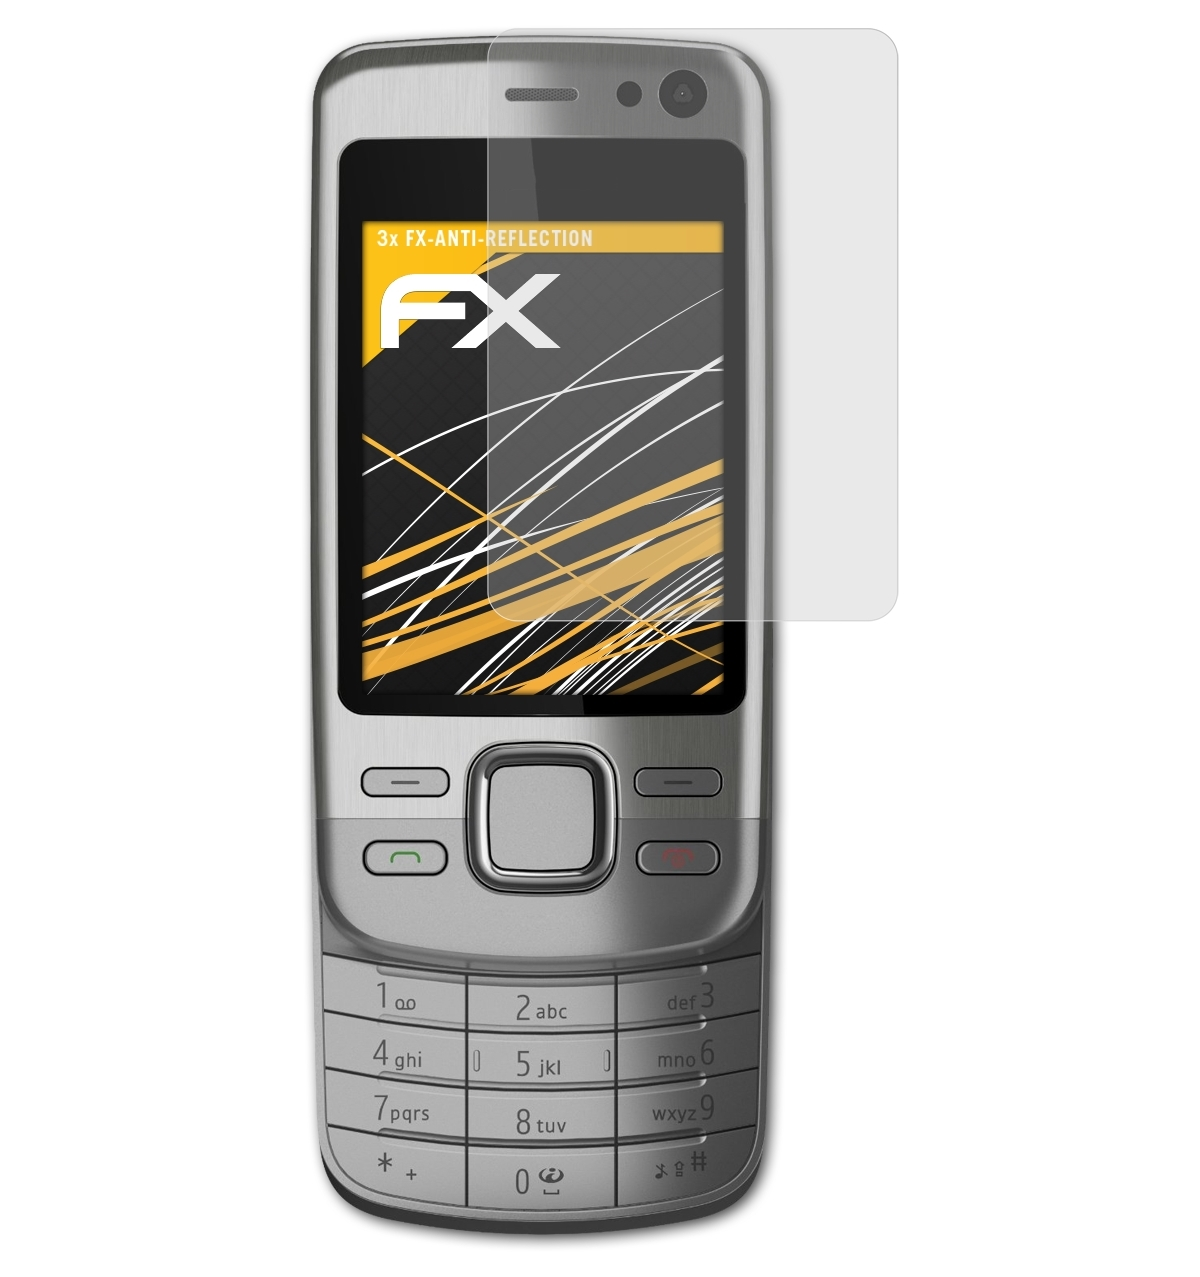 ATFOLIX 3x FX-Antireflex Nokia Displayschutz(für Slide) 6600i